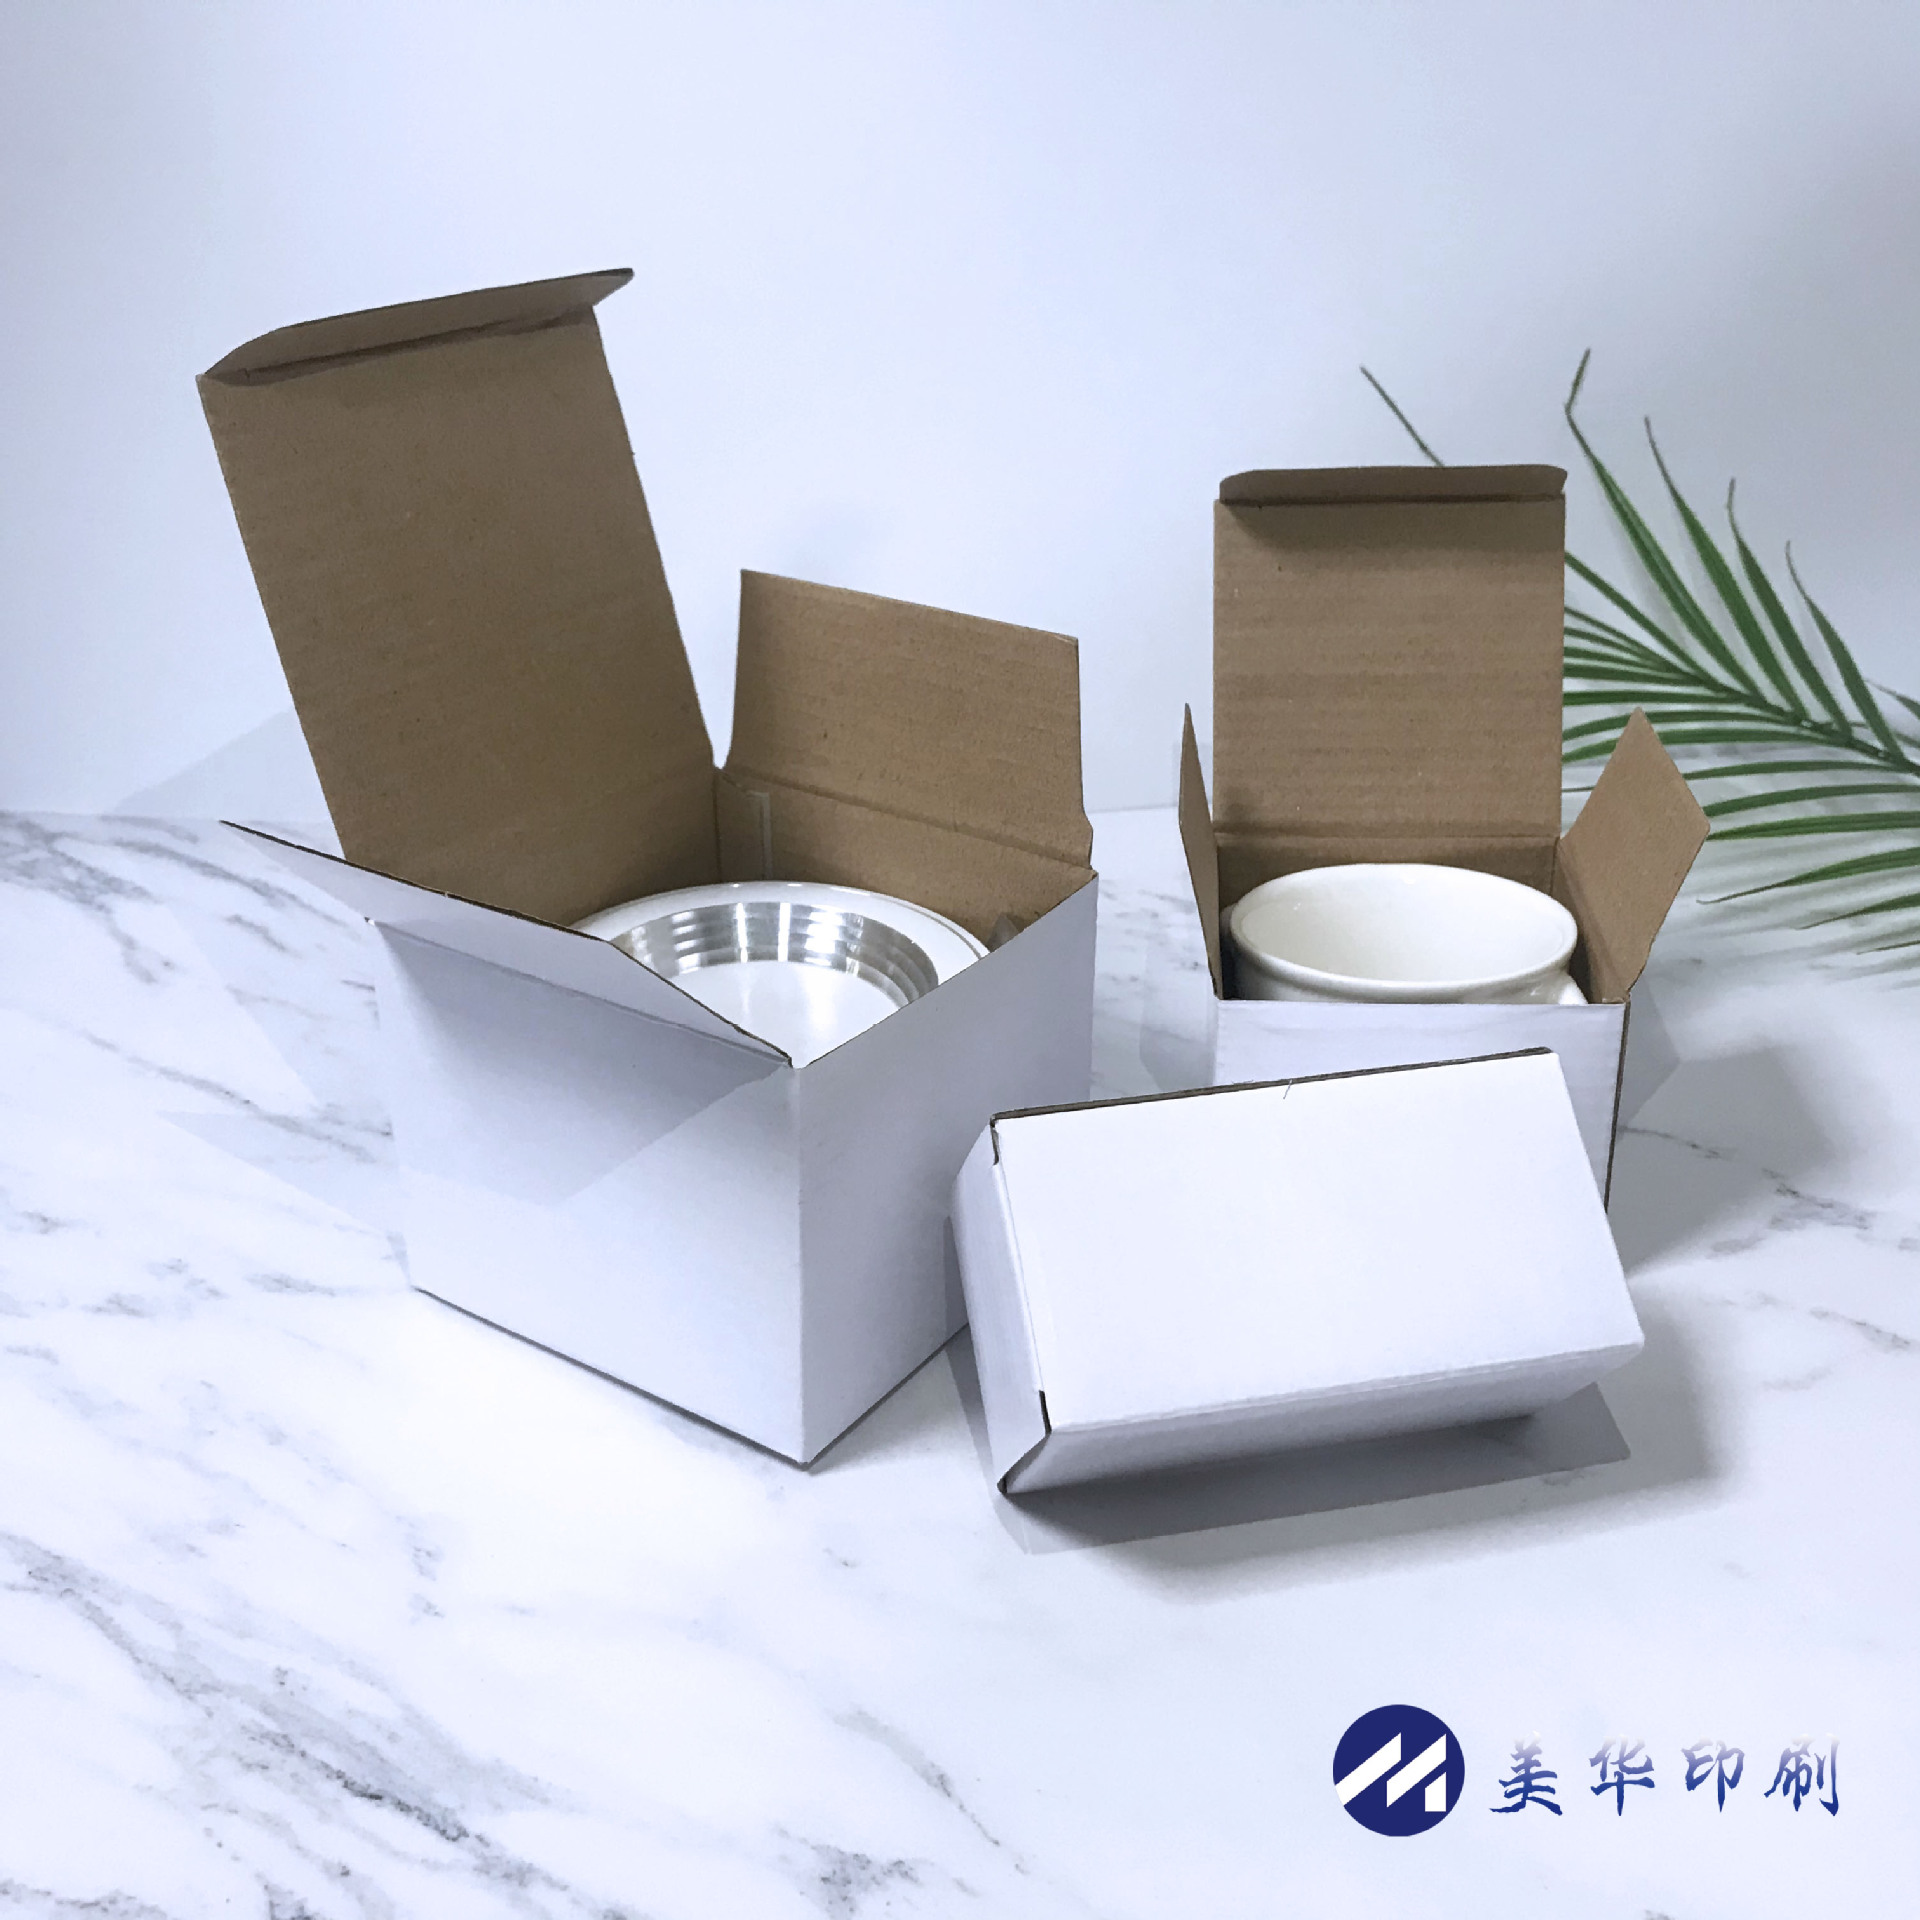 正方形瓦楞白色包装盒白盒现货杯子盒中性礼品盒彩印定制印刷logo